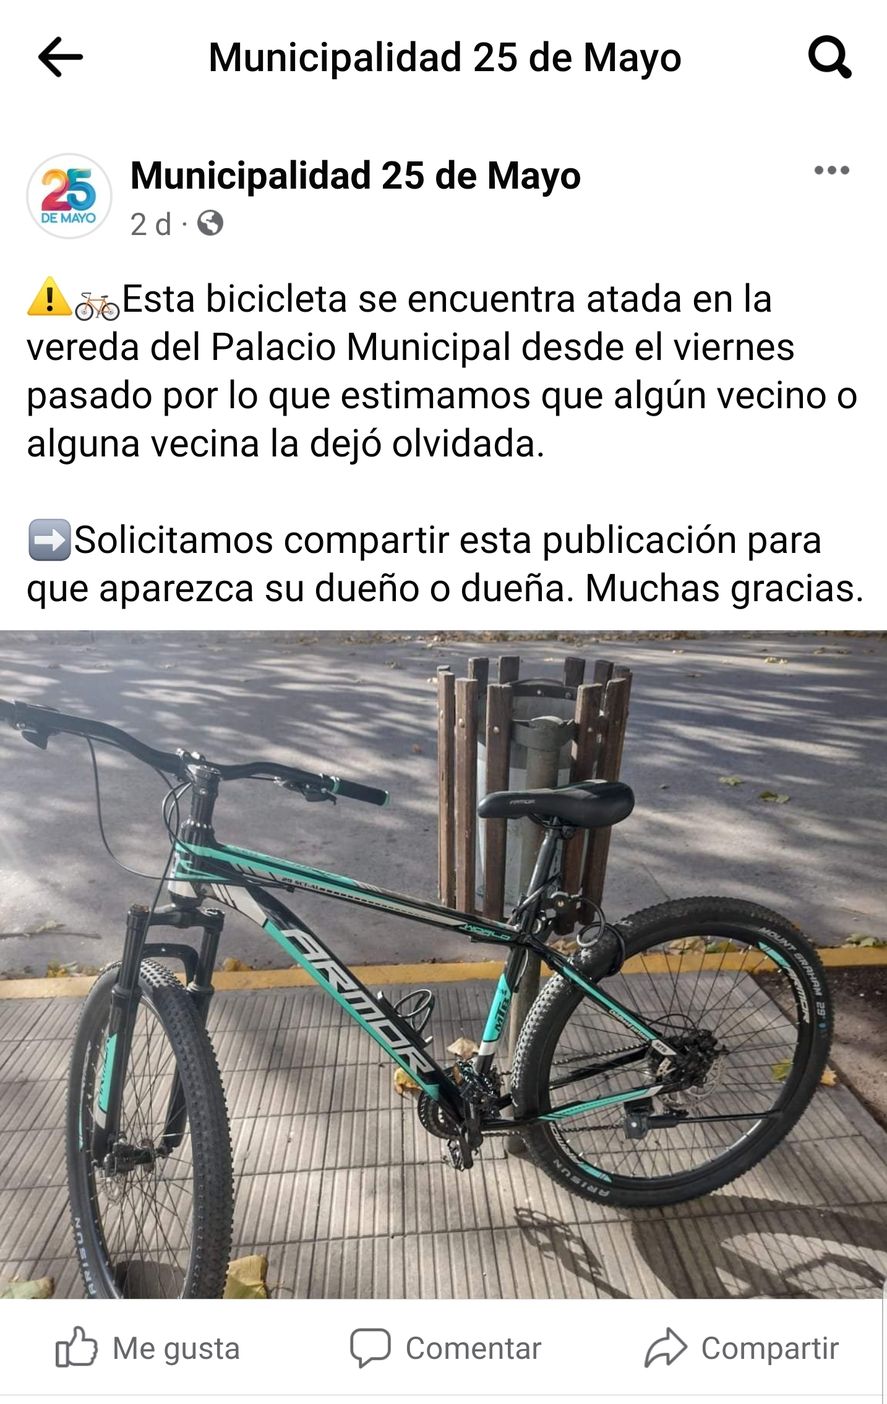 Así se ve la publicación en la cuenta oficial de Facebook del municipio de 25 de Mayo, sobre la bicicleta que quedó atada frente al Palacio Municipal desde el viernes pasado 